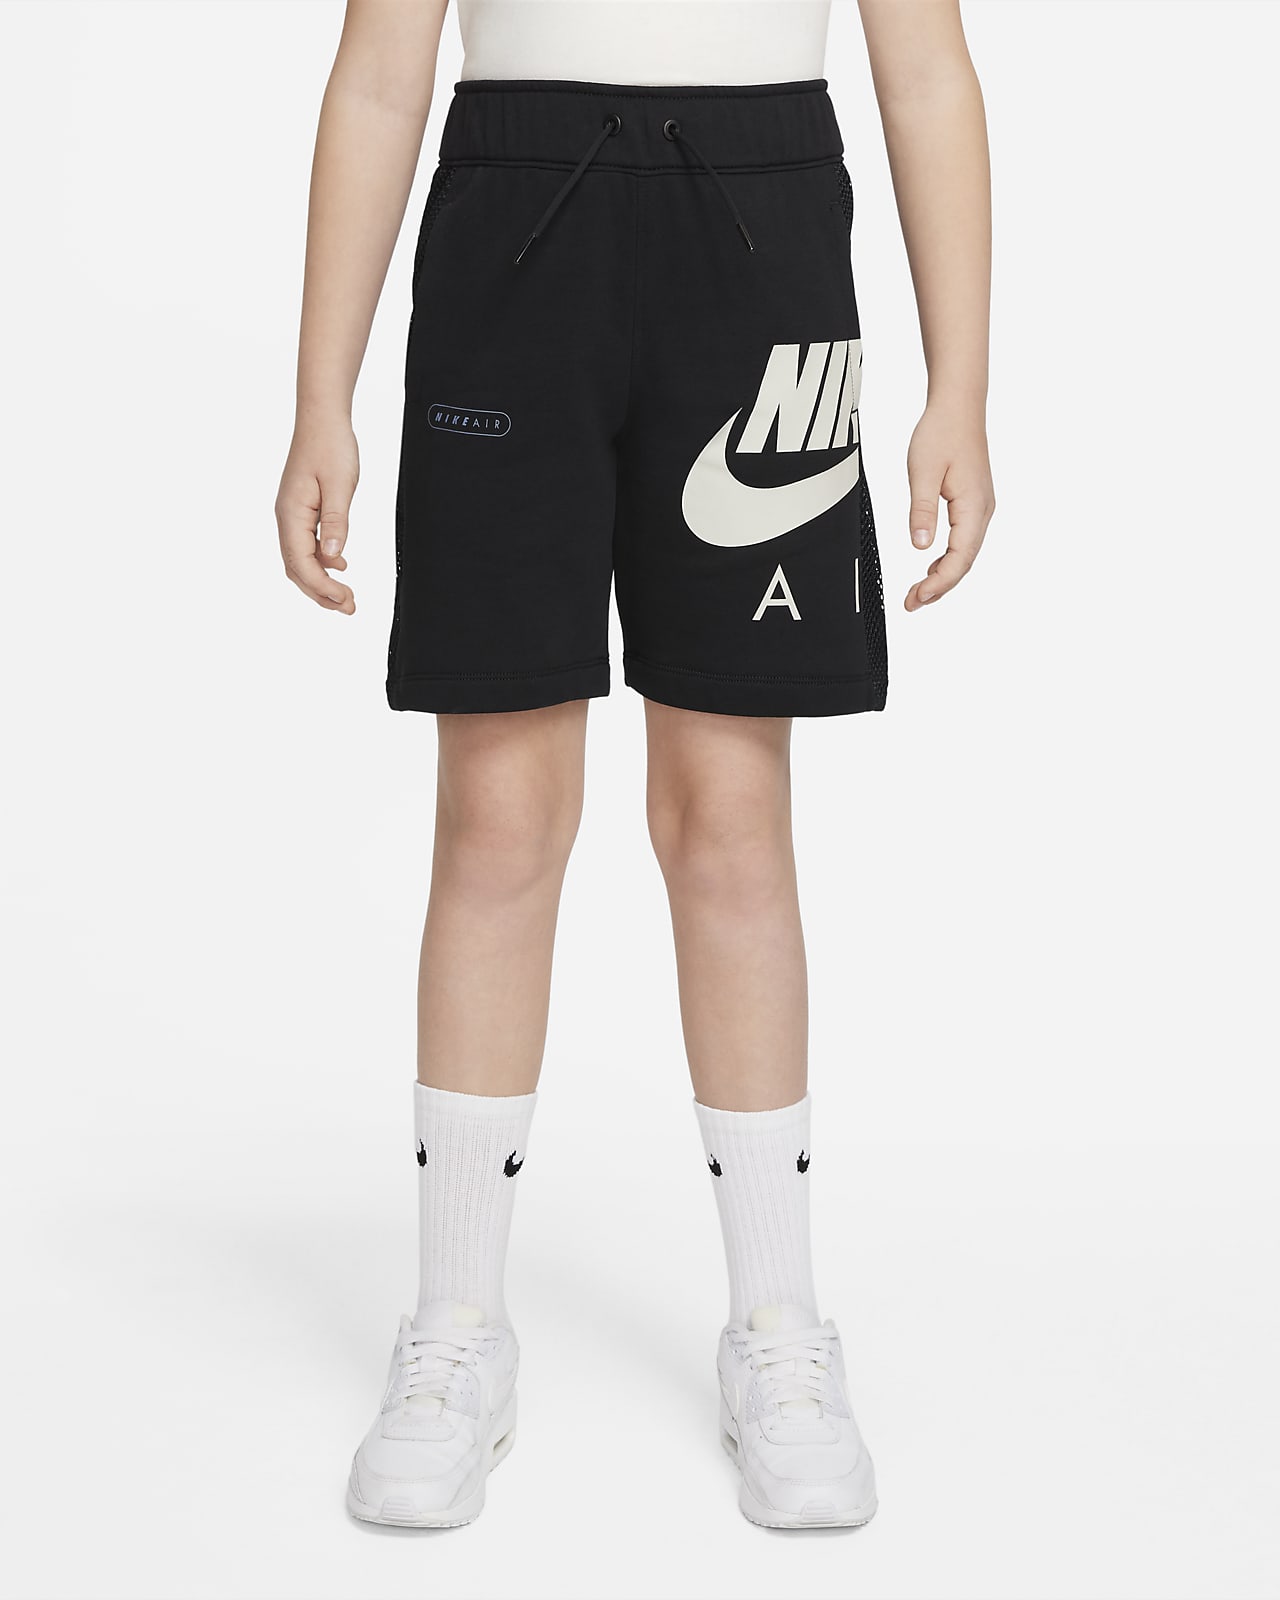 กางเกงขาสั้นผ้าเฟรนช์เทรีเด็กโต Nike Air (ชาย)